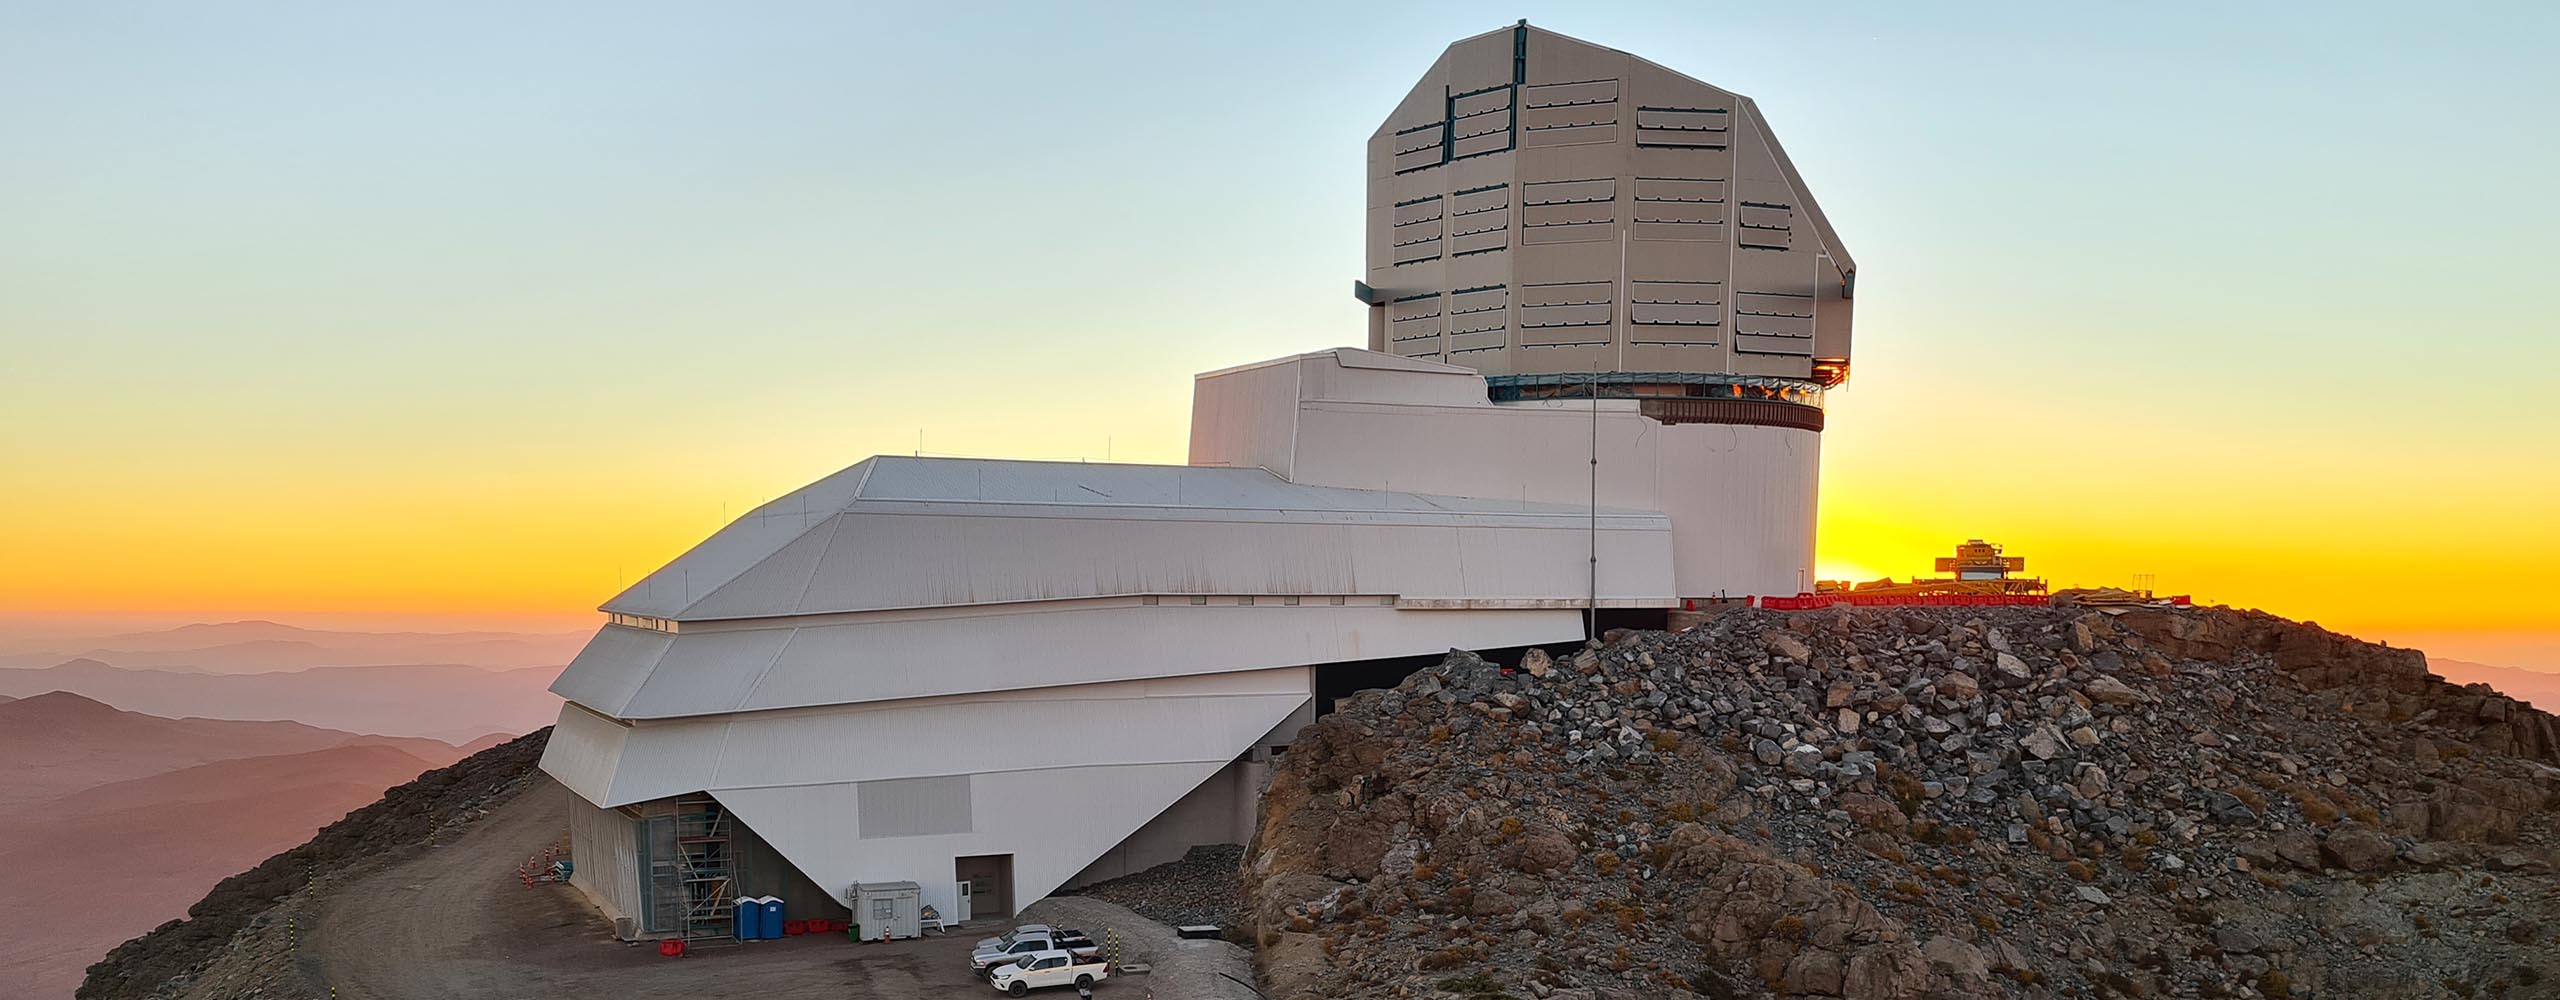 Vera Rubin observatory, Credit: Rubin Obs/NSF/AURA